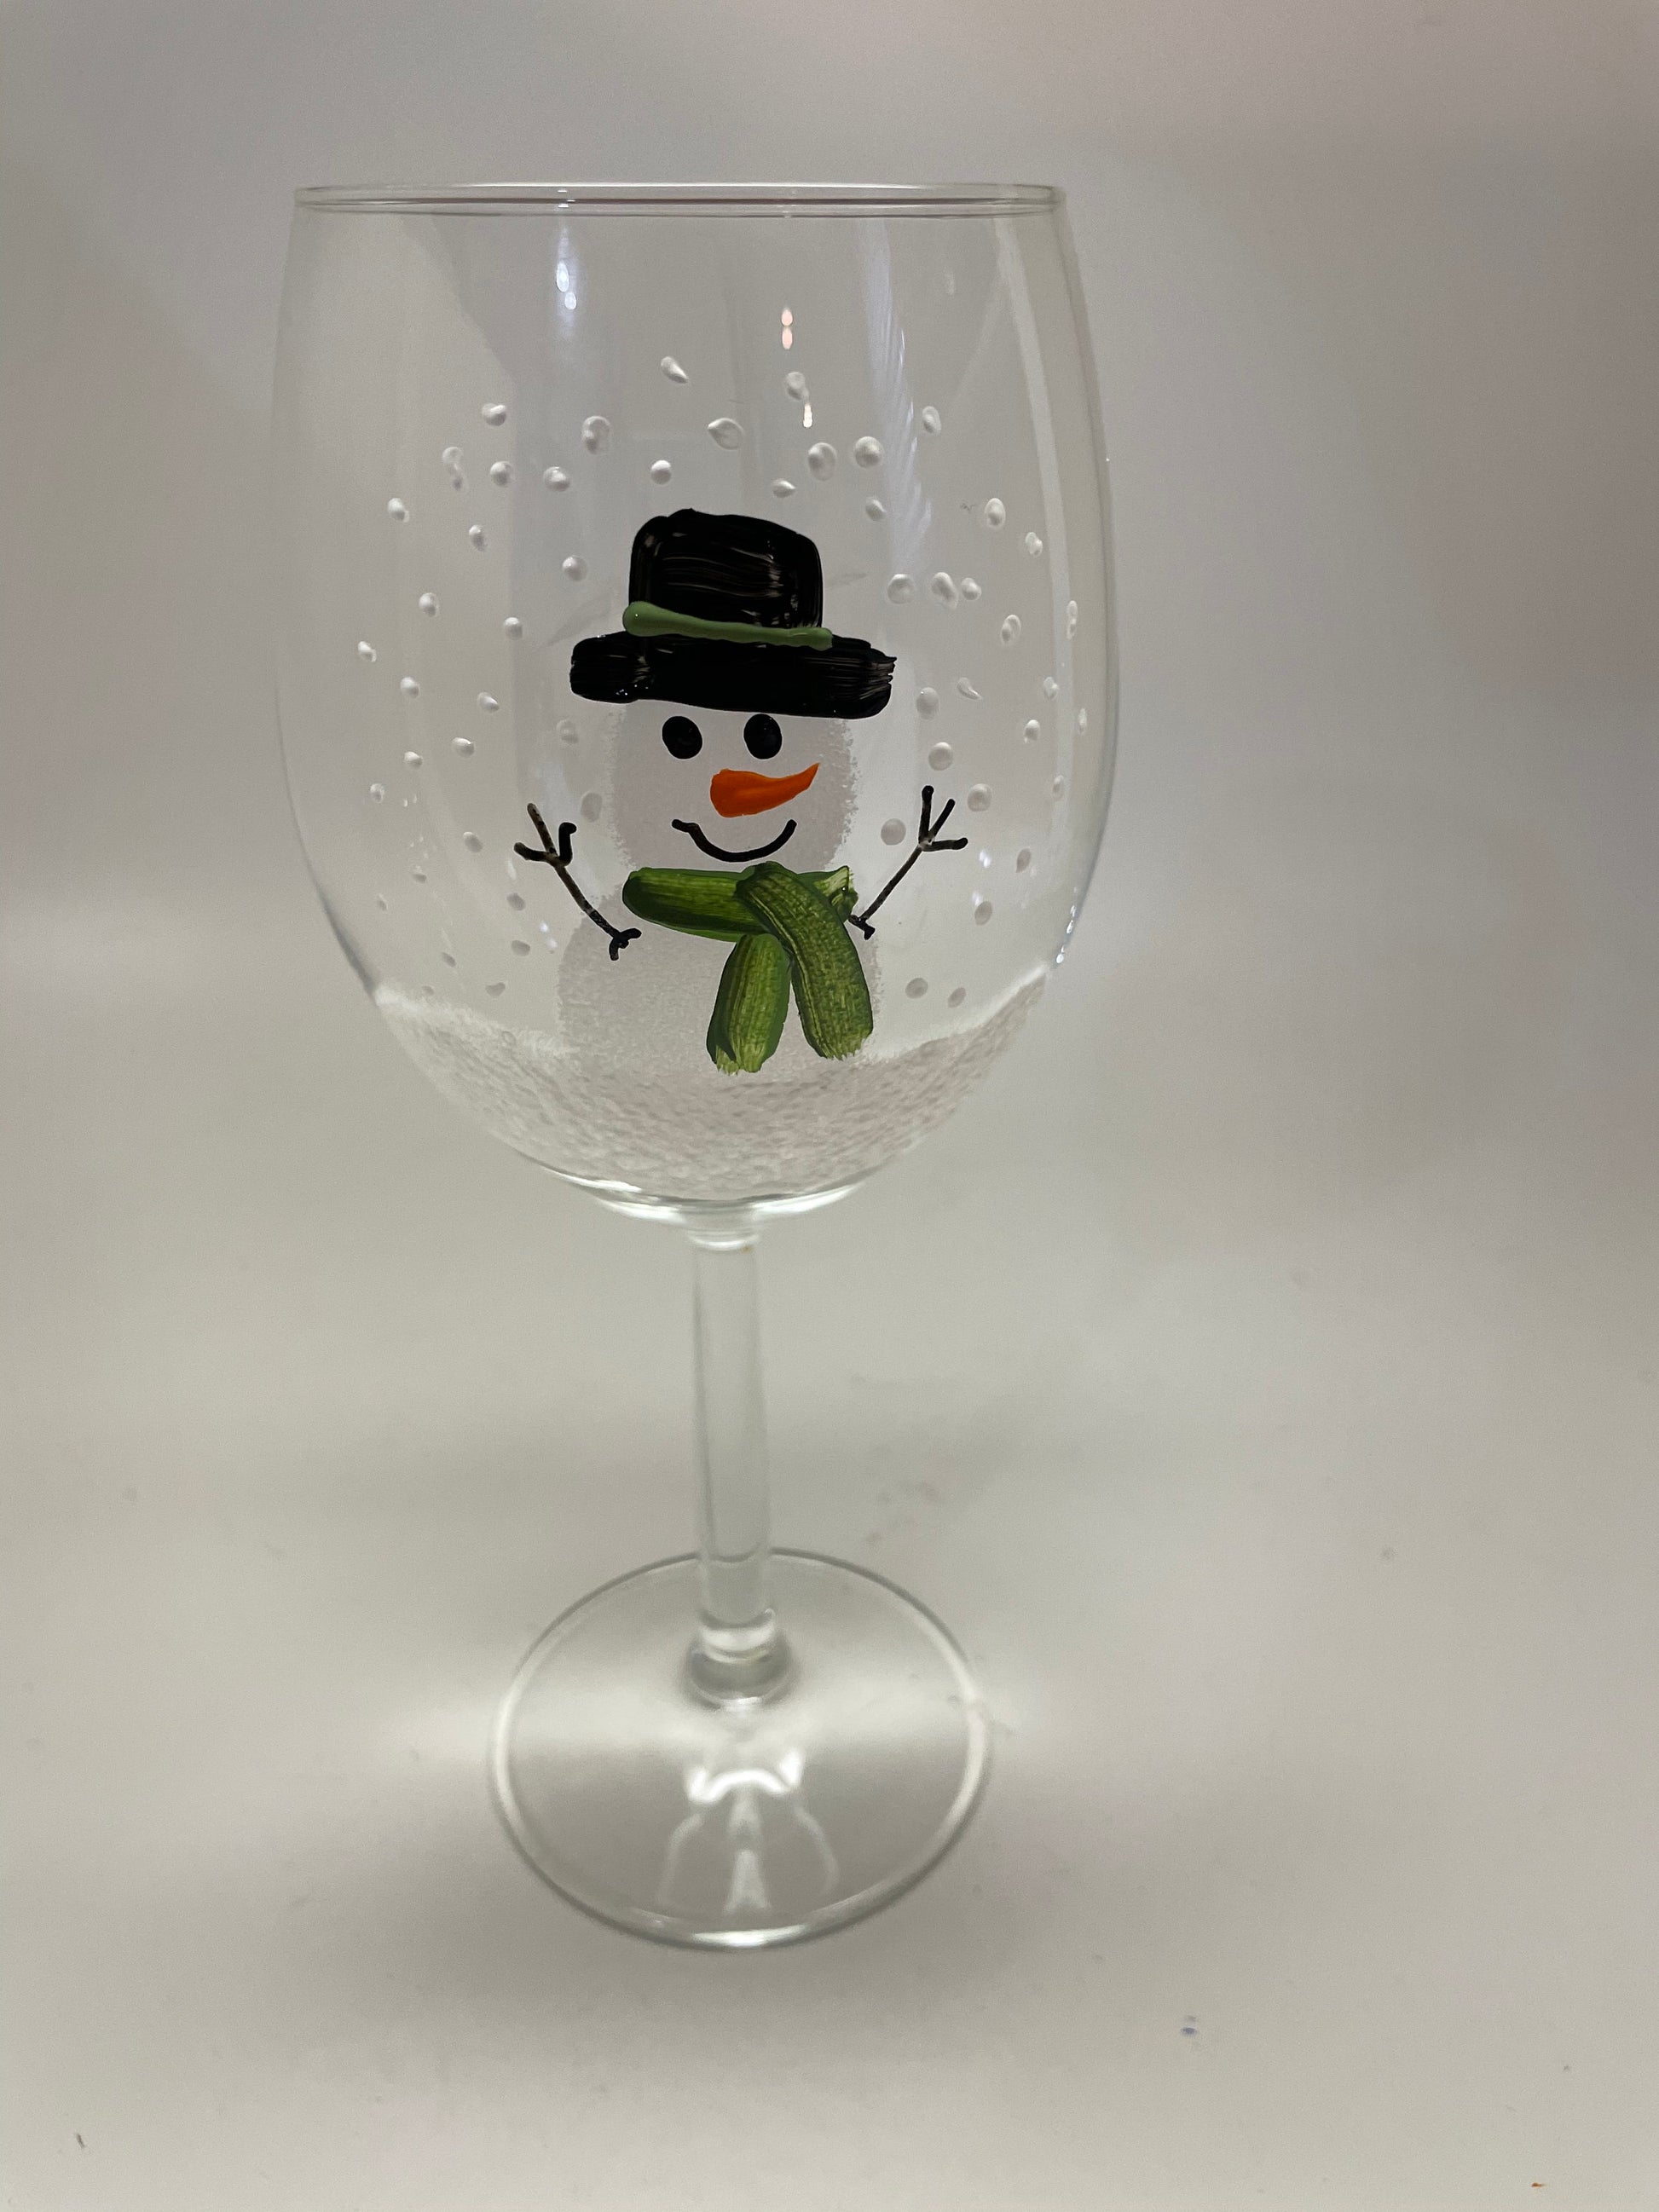 Cute Snowman Glassware